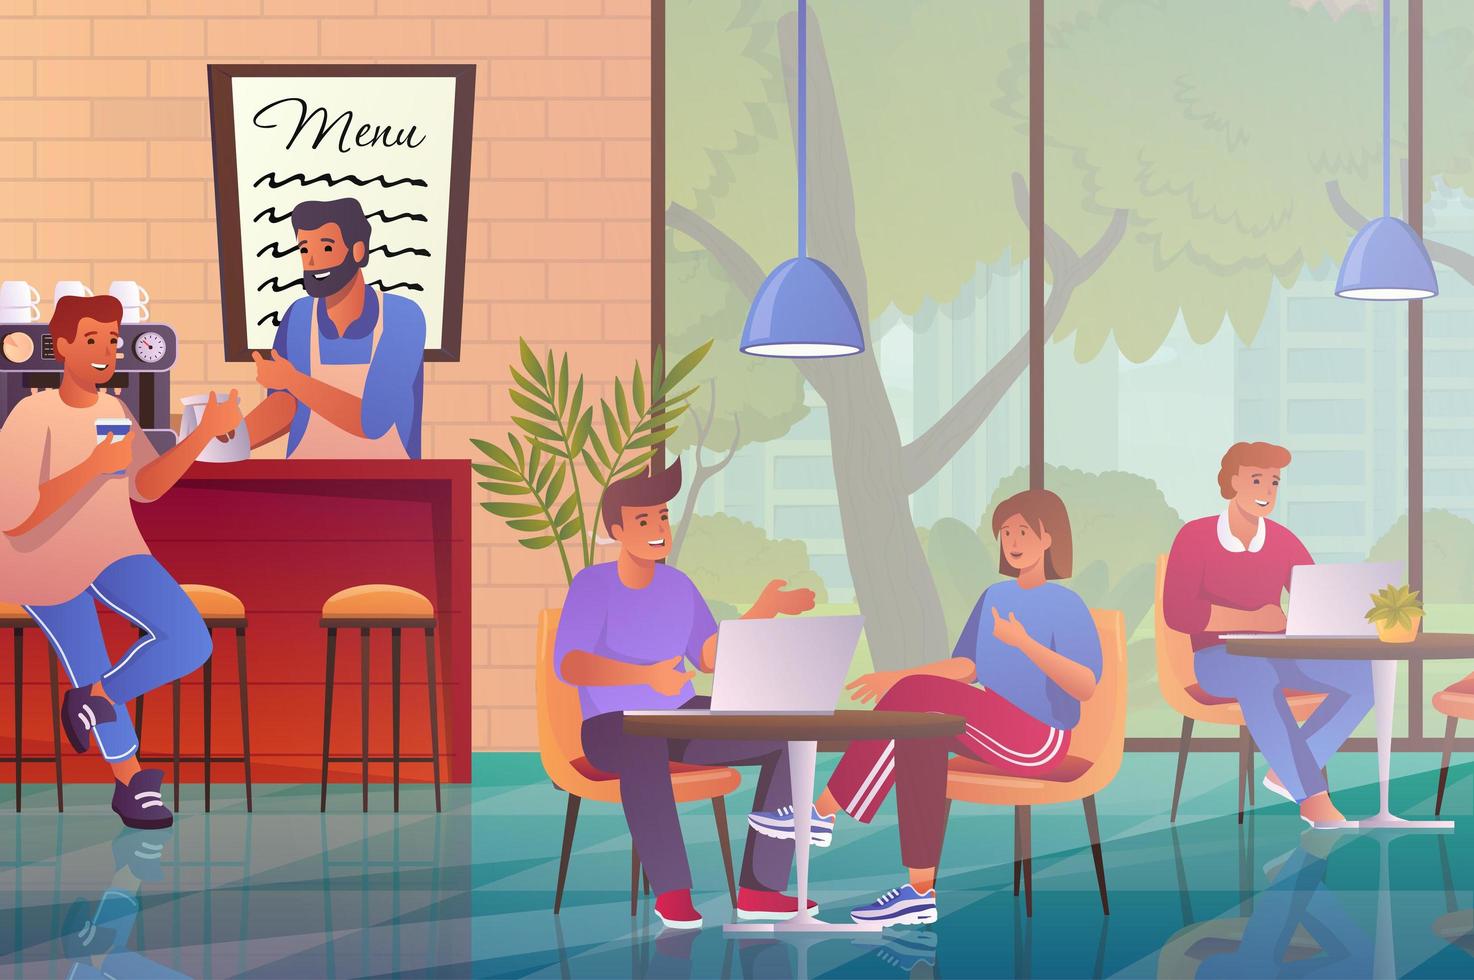 modernes interieur des cafés mit besucherkonzept im flachen karikaturdesign. Männer und Frauen sitzen in der Cafeteria am Tisch. barista, der dem kunden kaffee kocht. vektorillustration mit personenszenenhintergrund vektor